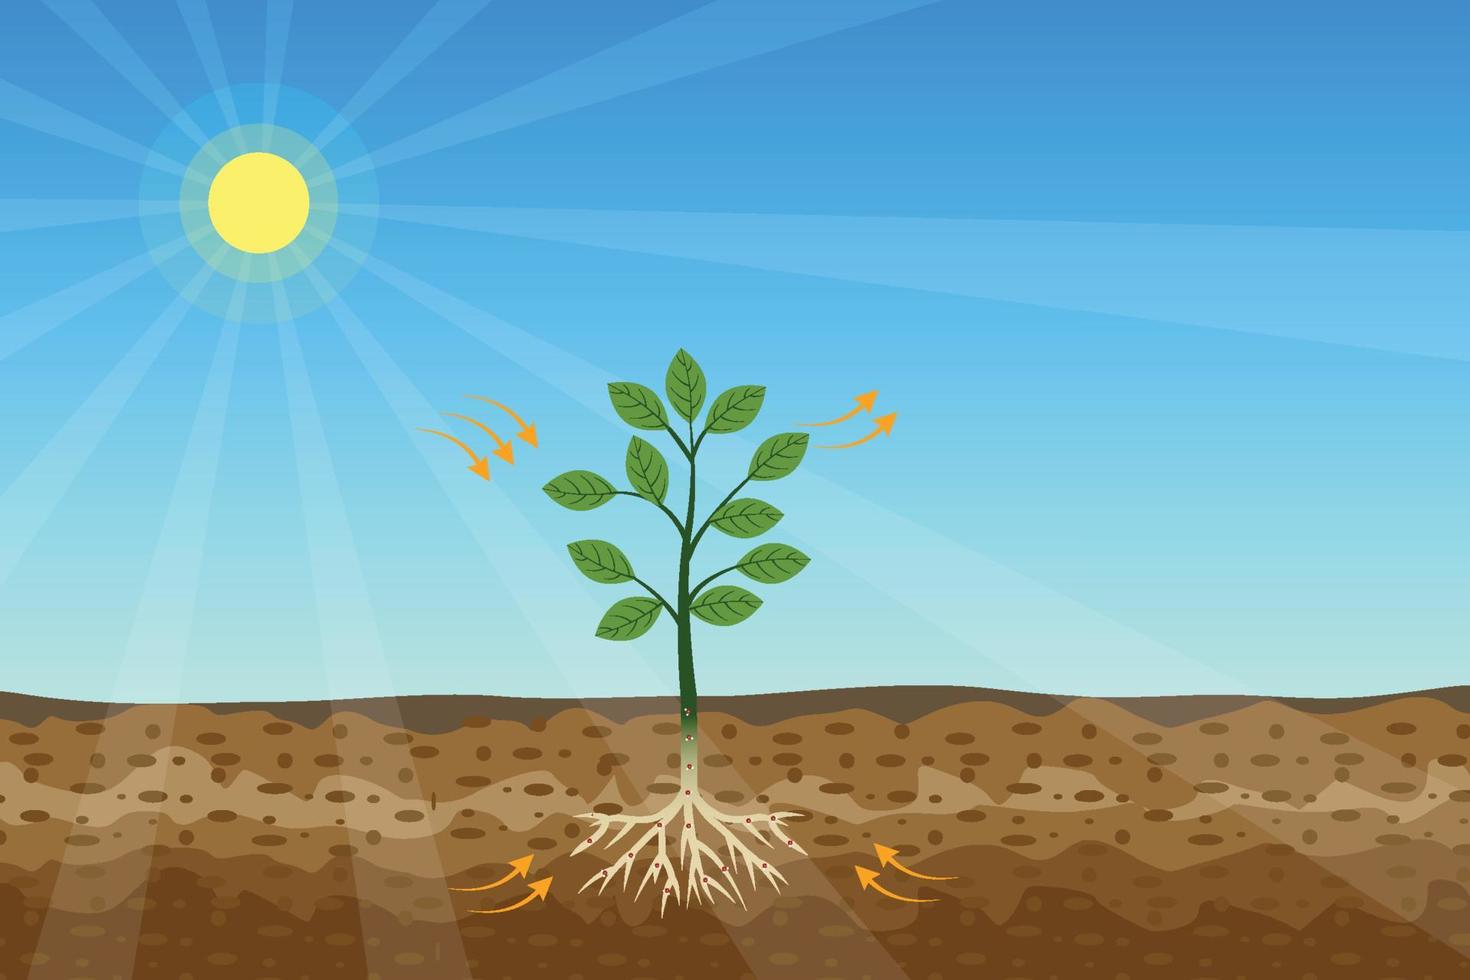 fotosyntheseproces met een groene plant en glanzende zonvector. groene planten krijgen energie en voeding van de zon en de bodem. een boom produceert zuurstof en suiker uit het zonlicht. vector